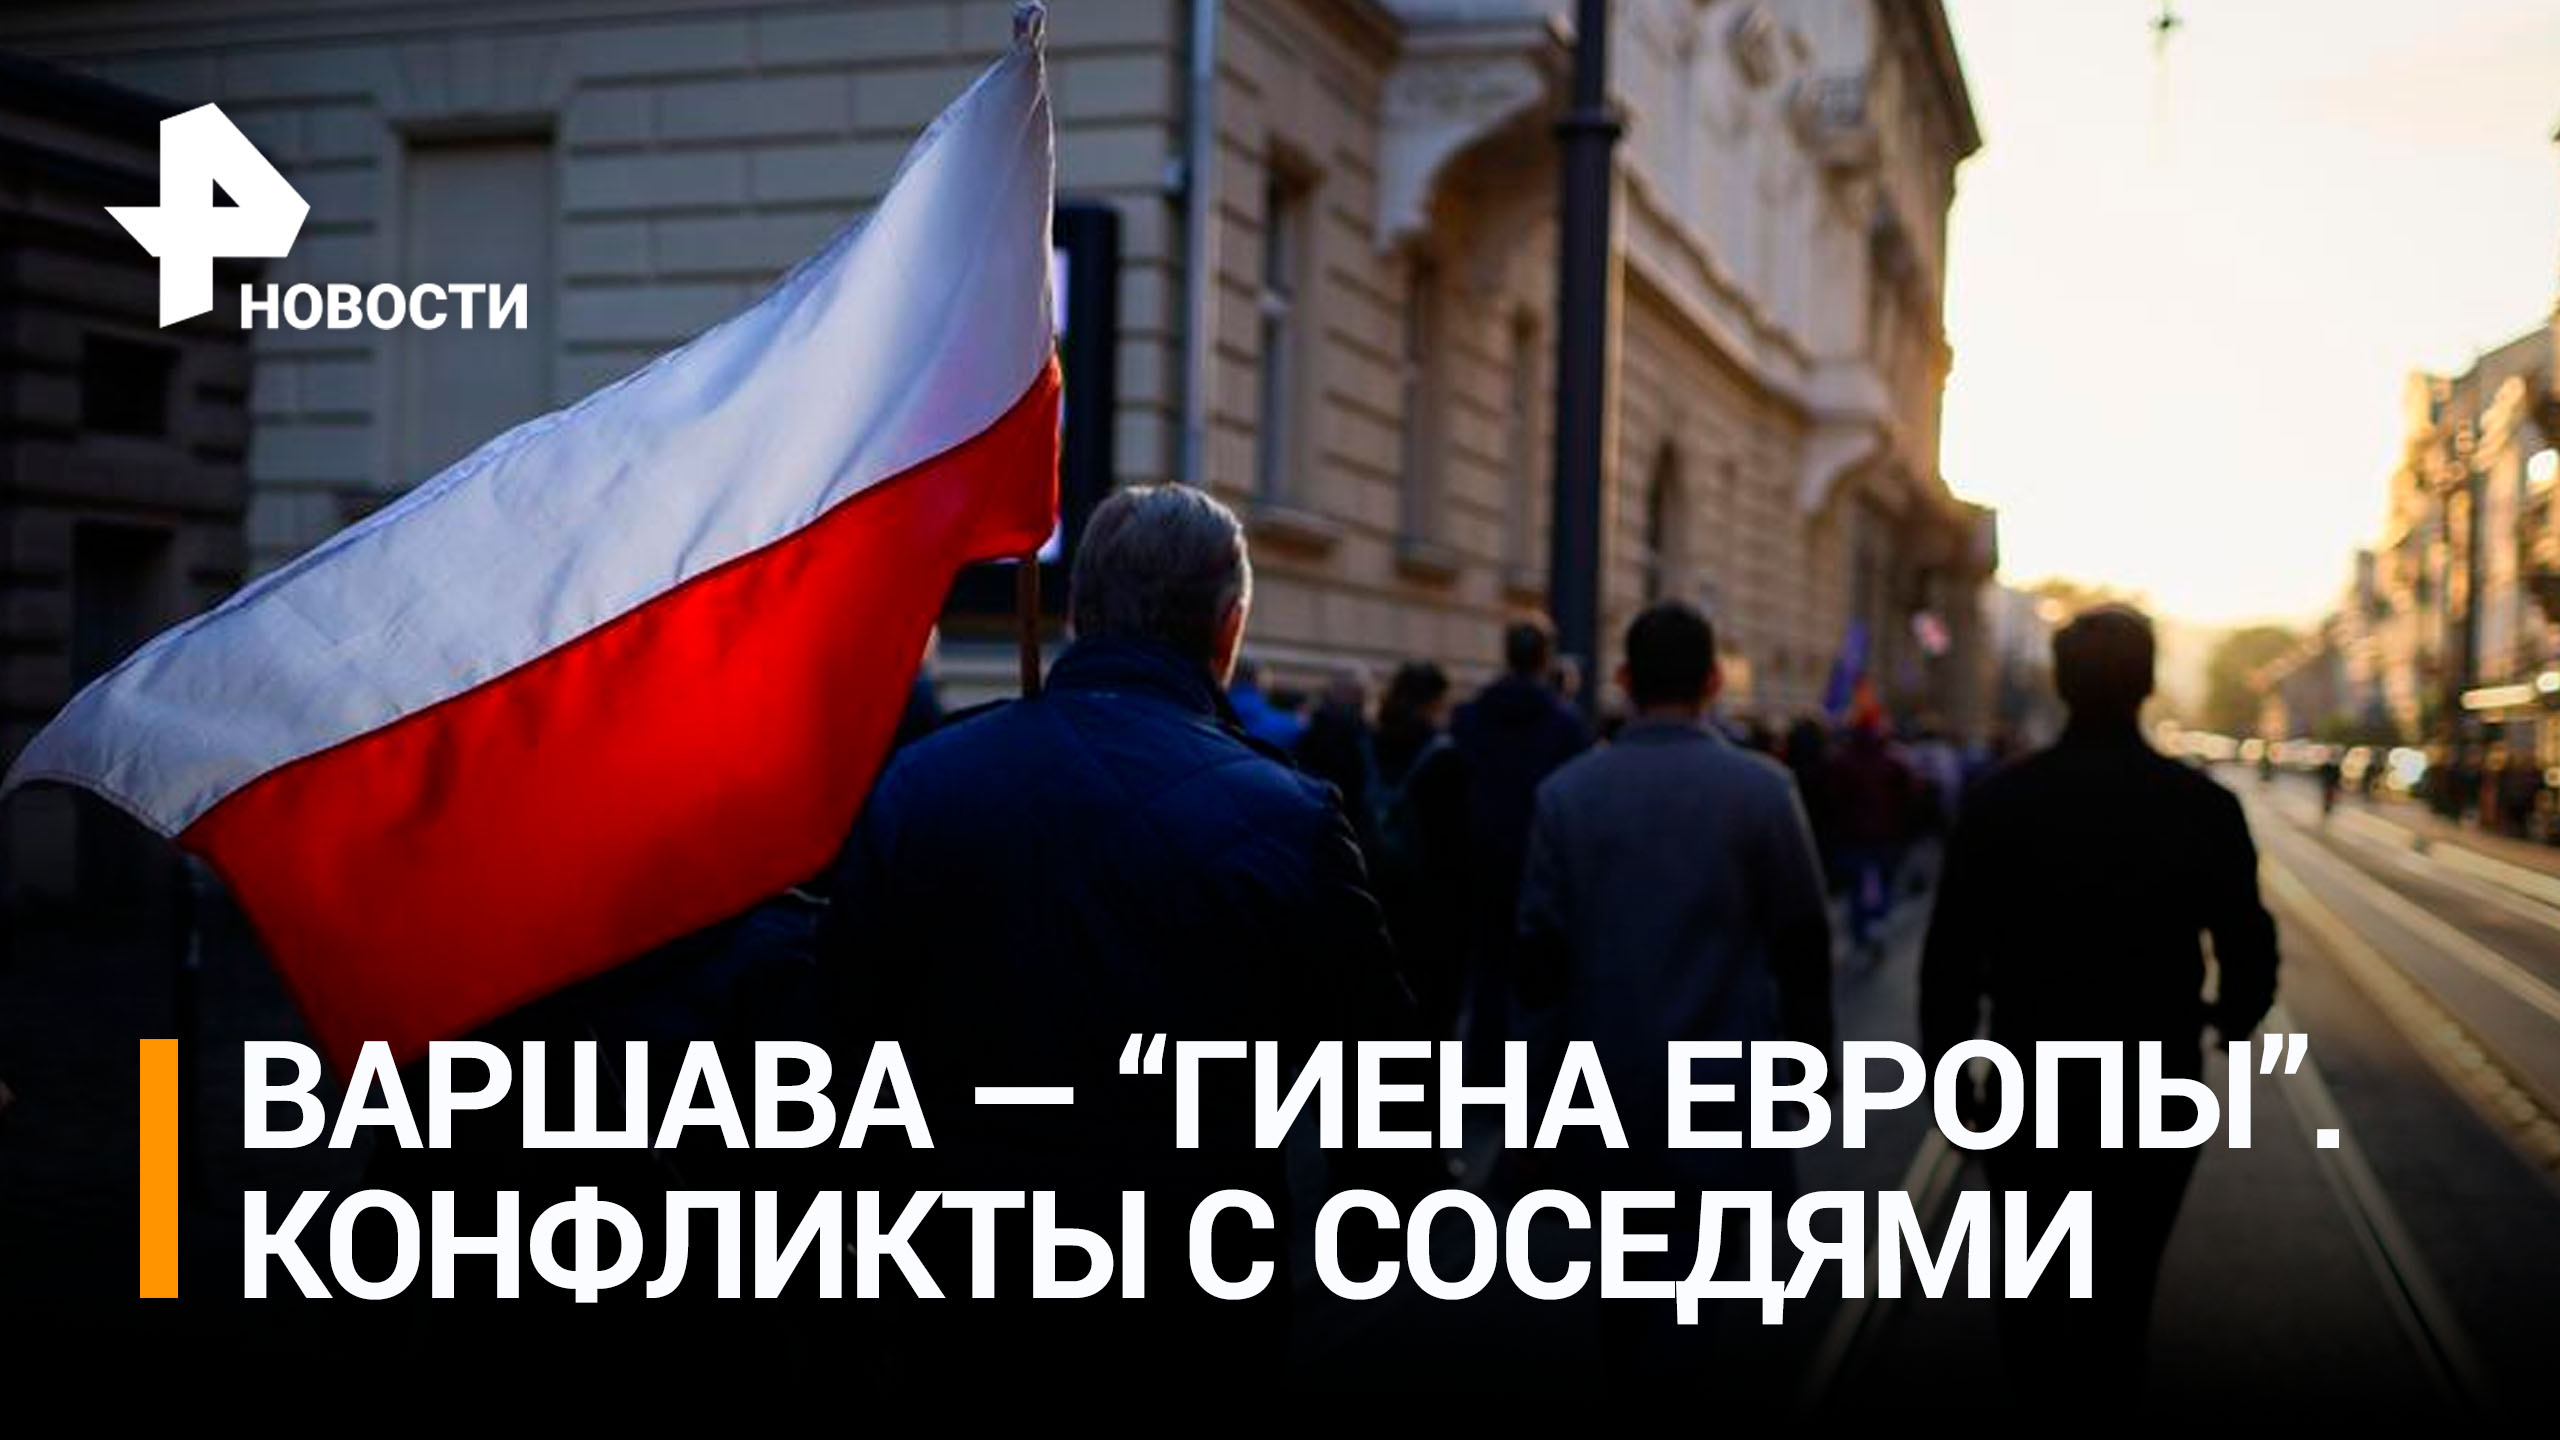 Нарышкин заявил, что Польша вновь превращается в "гиену Европы" / РЕН Новости